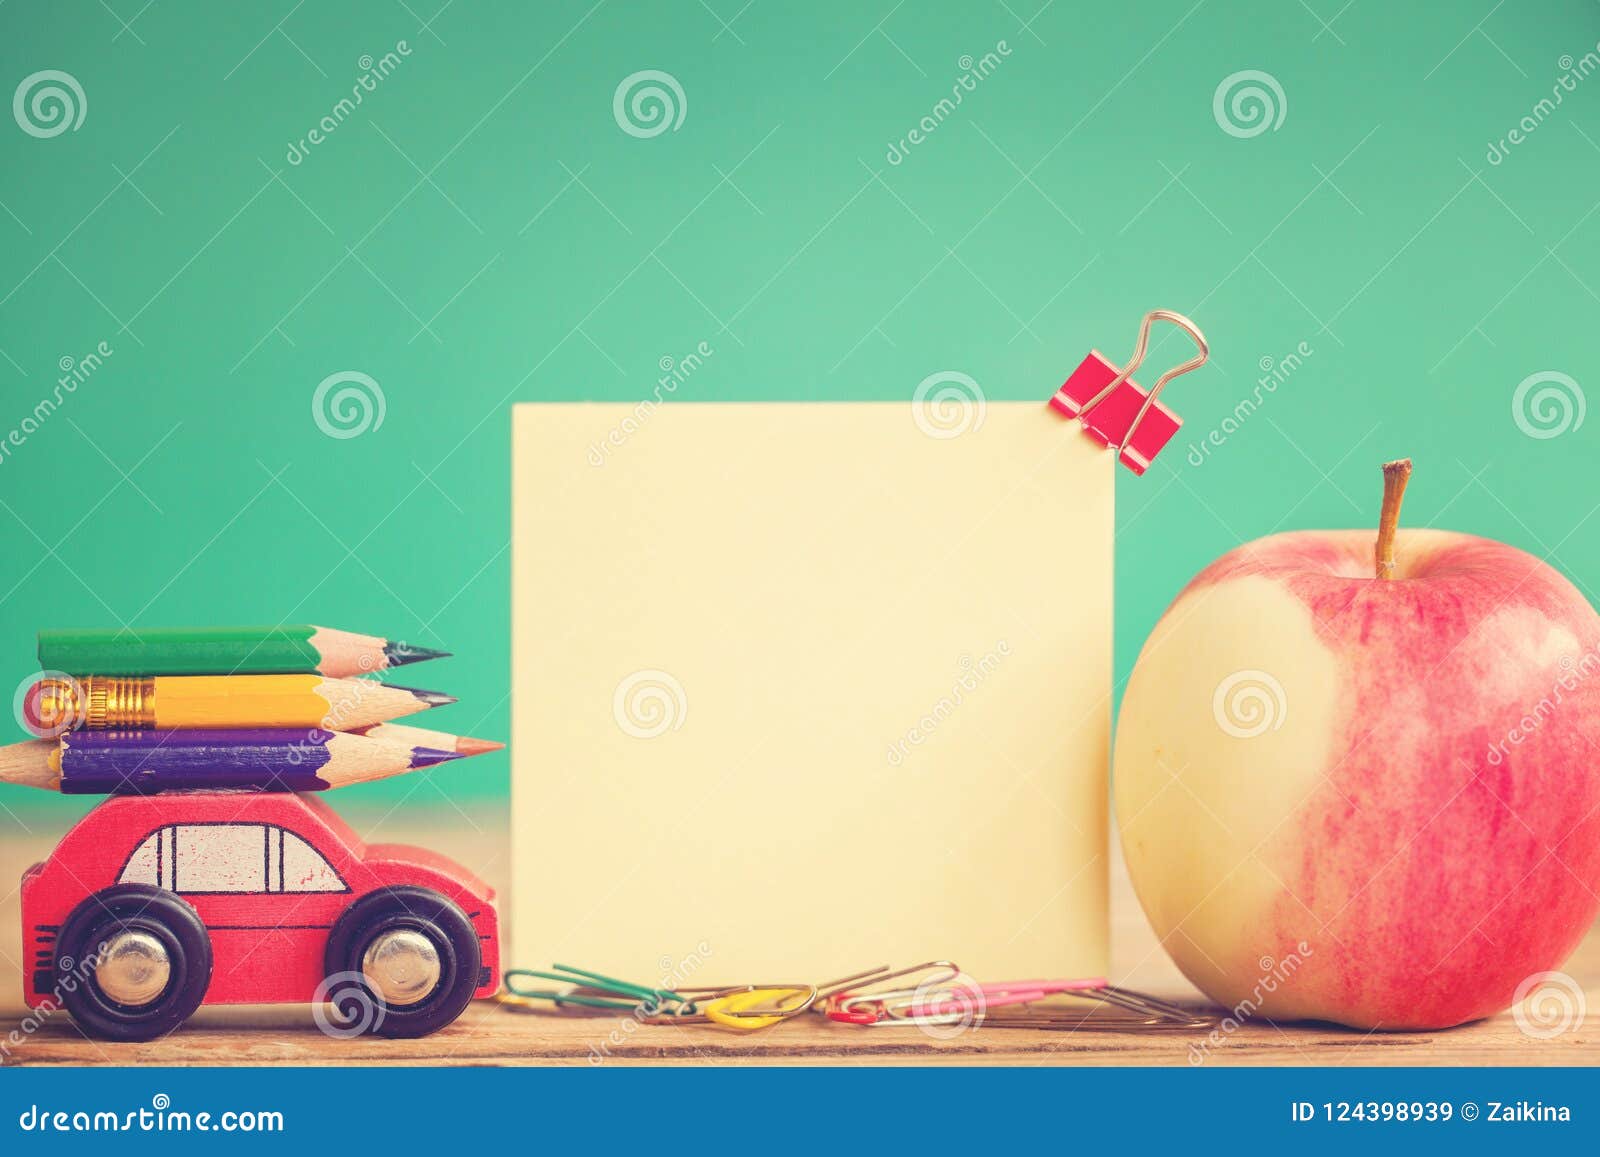 Terug naar het Concept van de School Het miniatuur Rode Auto Dragen kleurrijke potloden en rode appel op houten lijst stemmend beeld